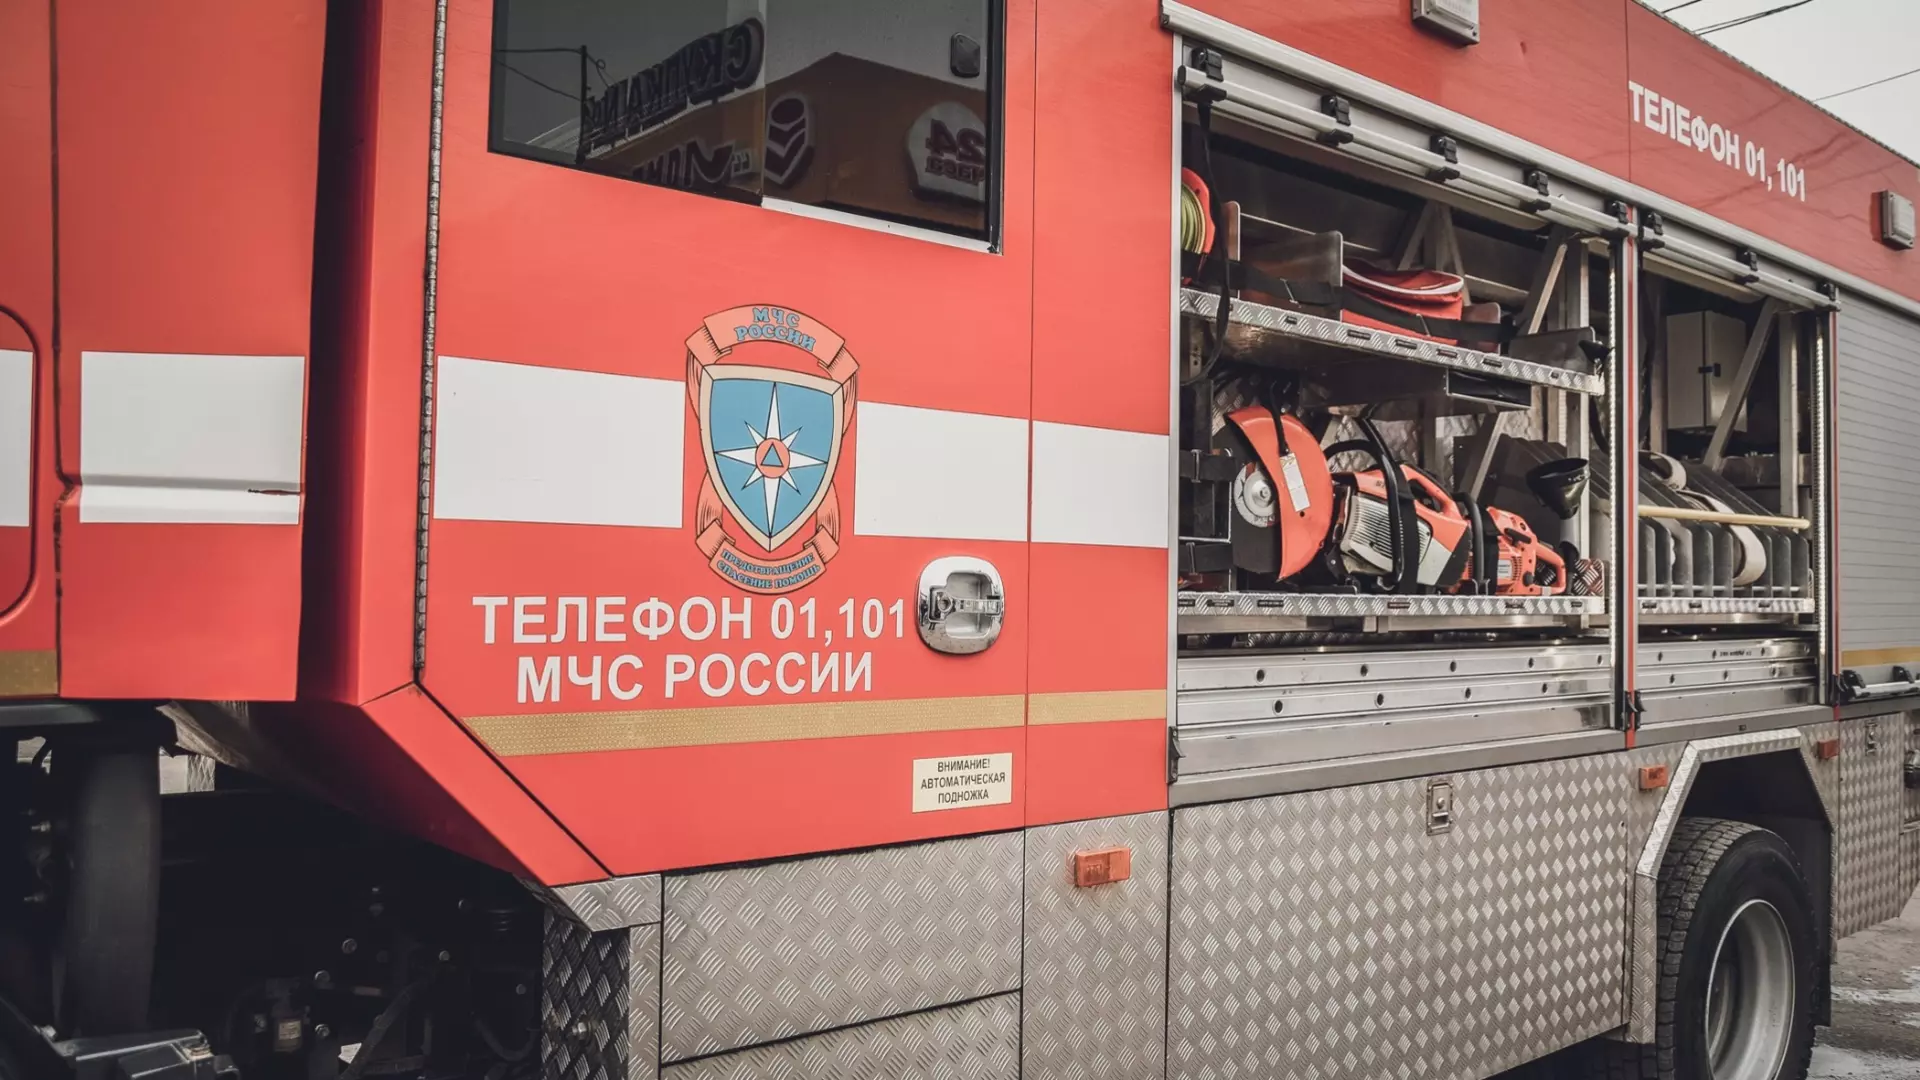 В Челябинске балкон жилого дома вспыхнул из-за фейерверка